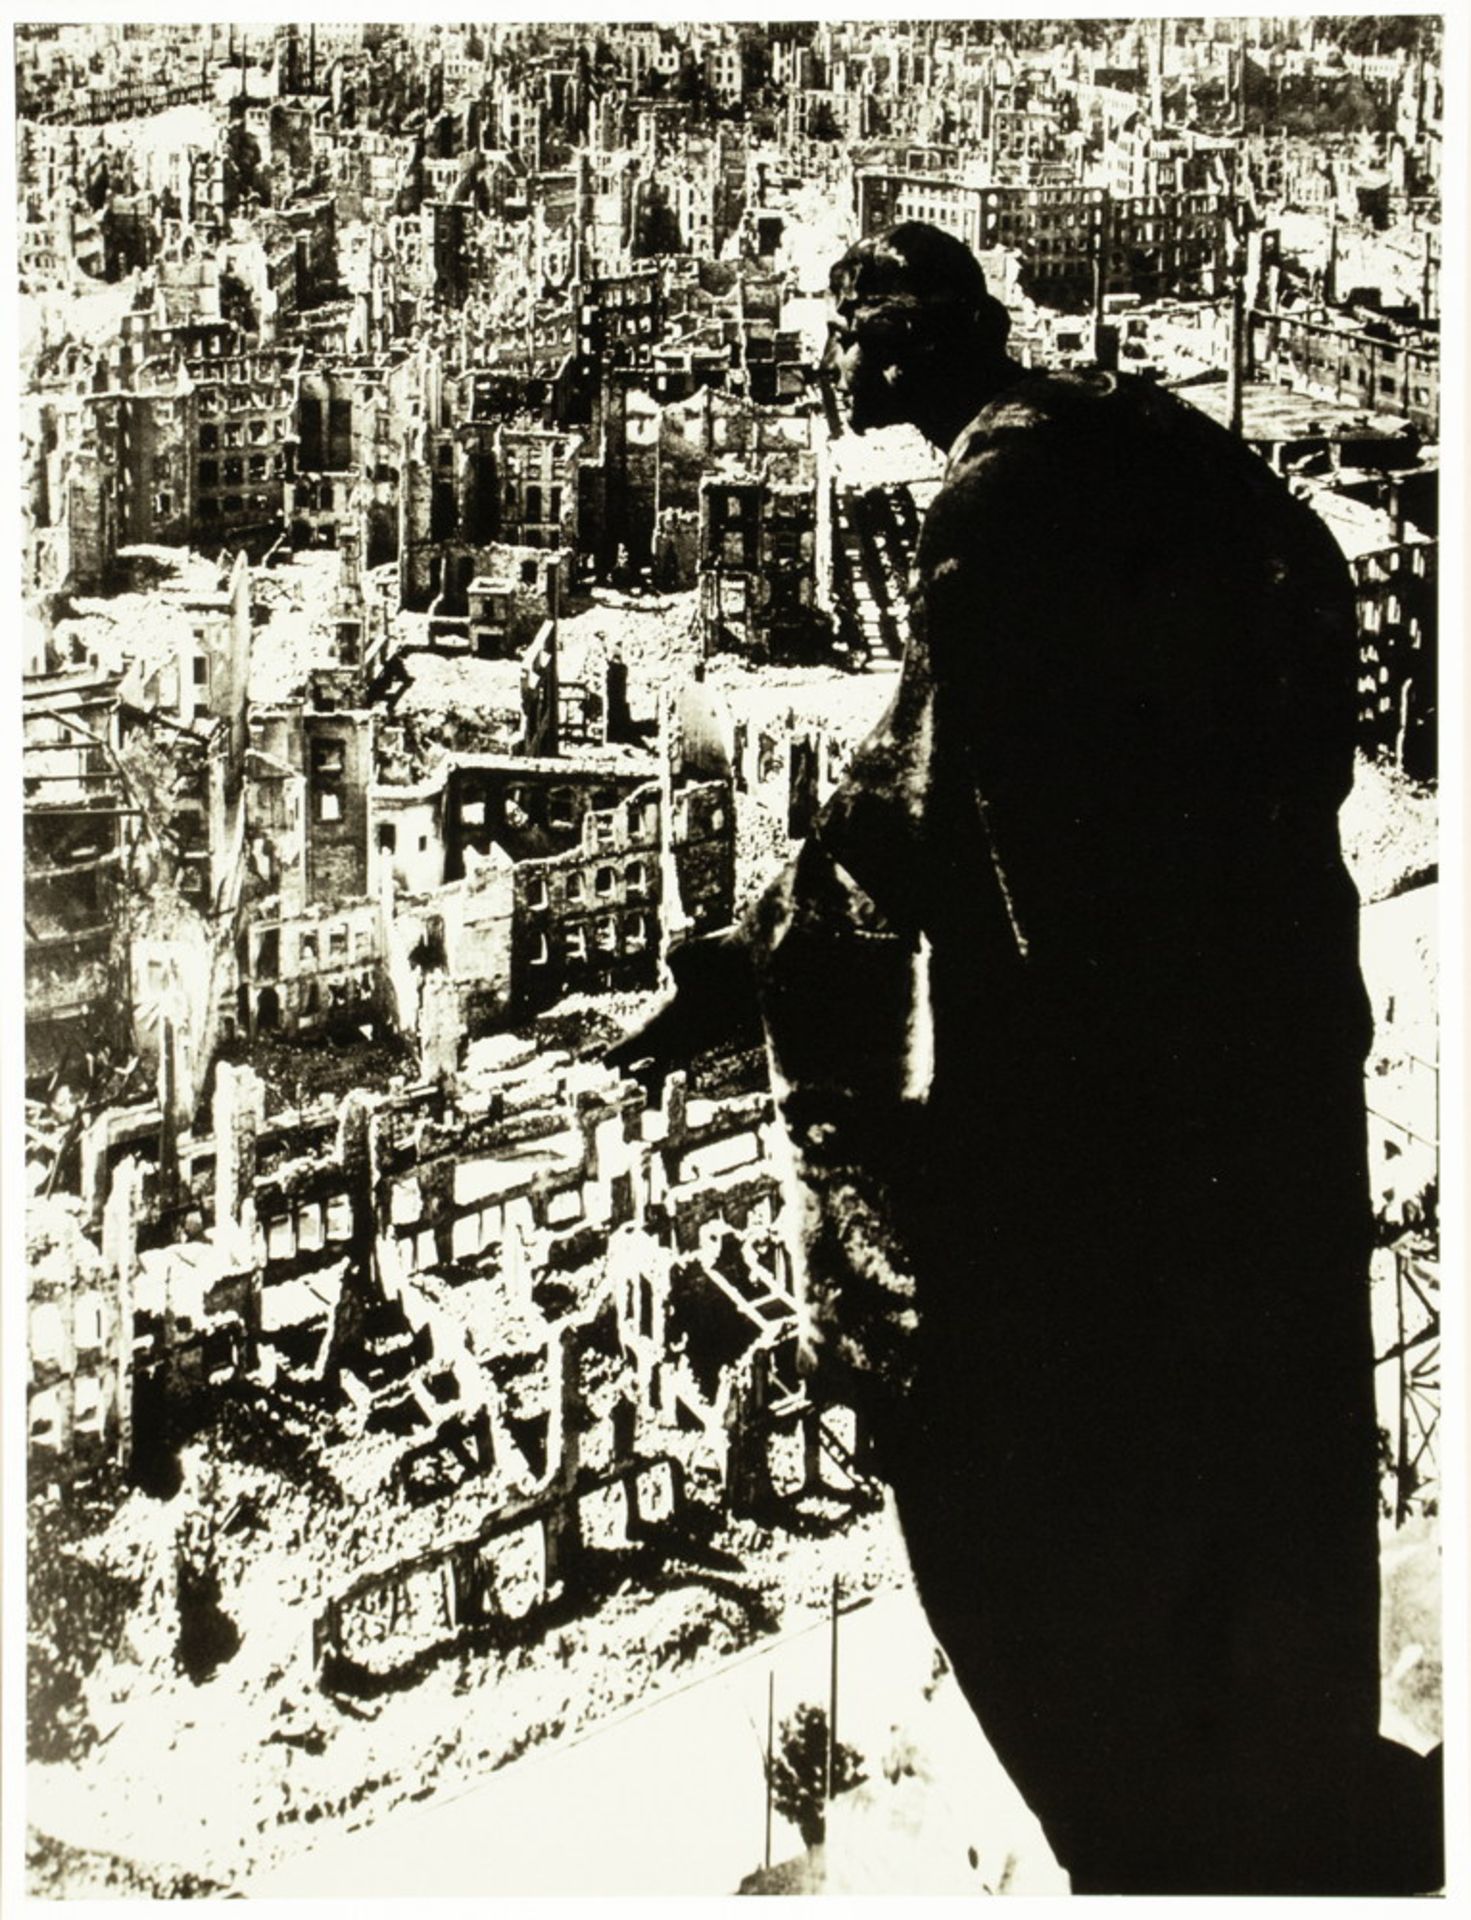 Fotografie - Aus den Archiven I: 1945 - Köln und Dresden. - Image 3 of 7